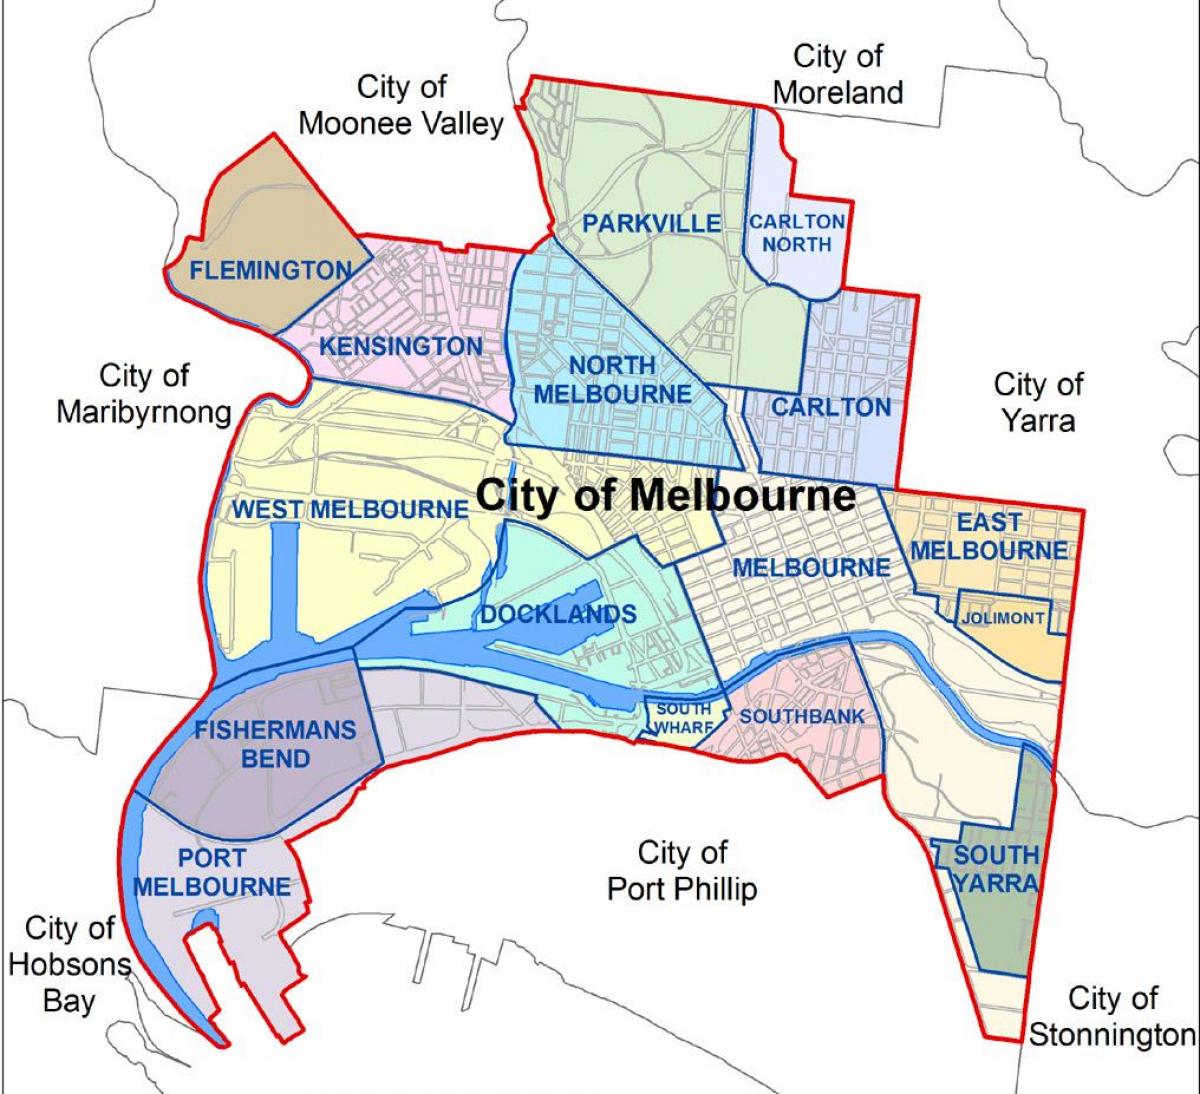 kort over Melbourne og omegn